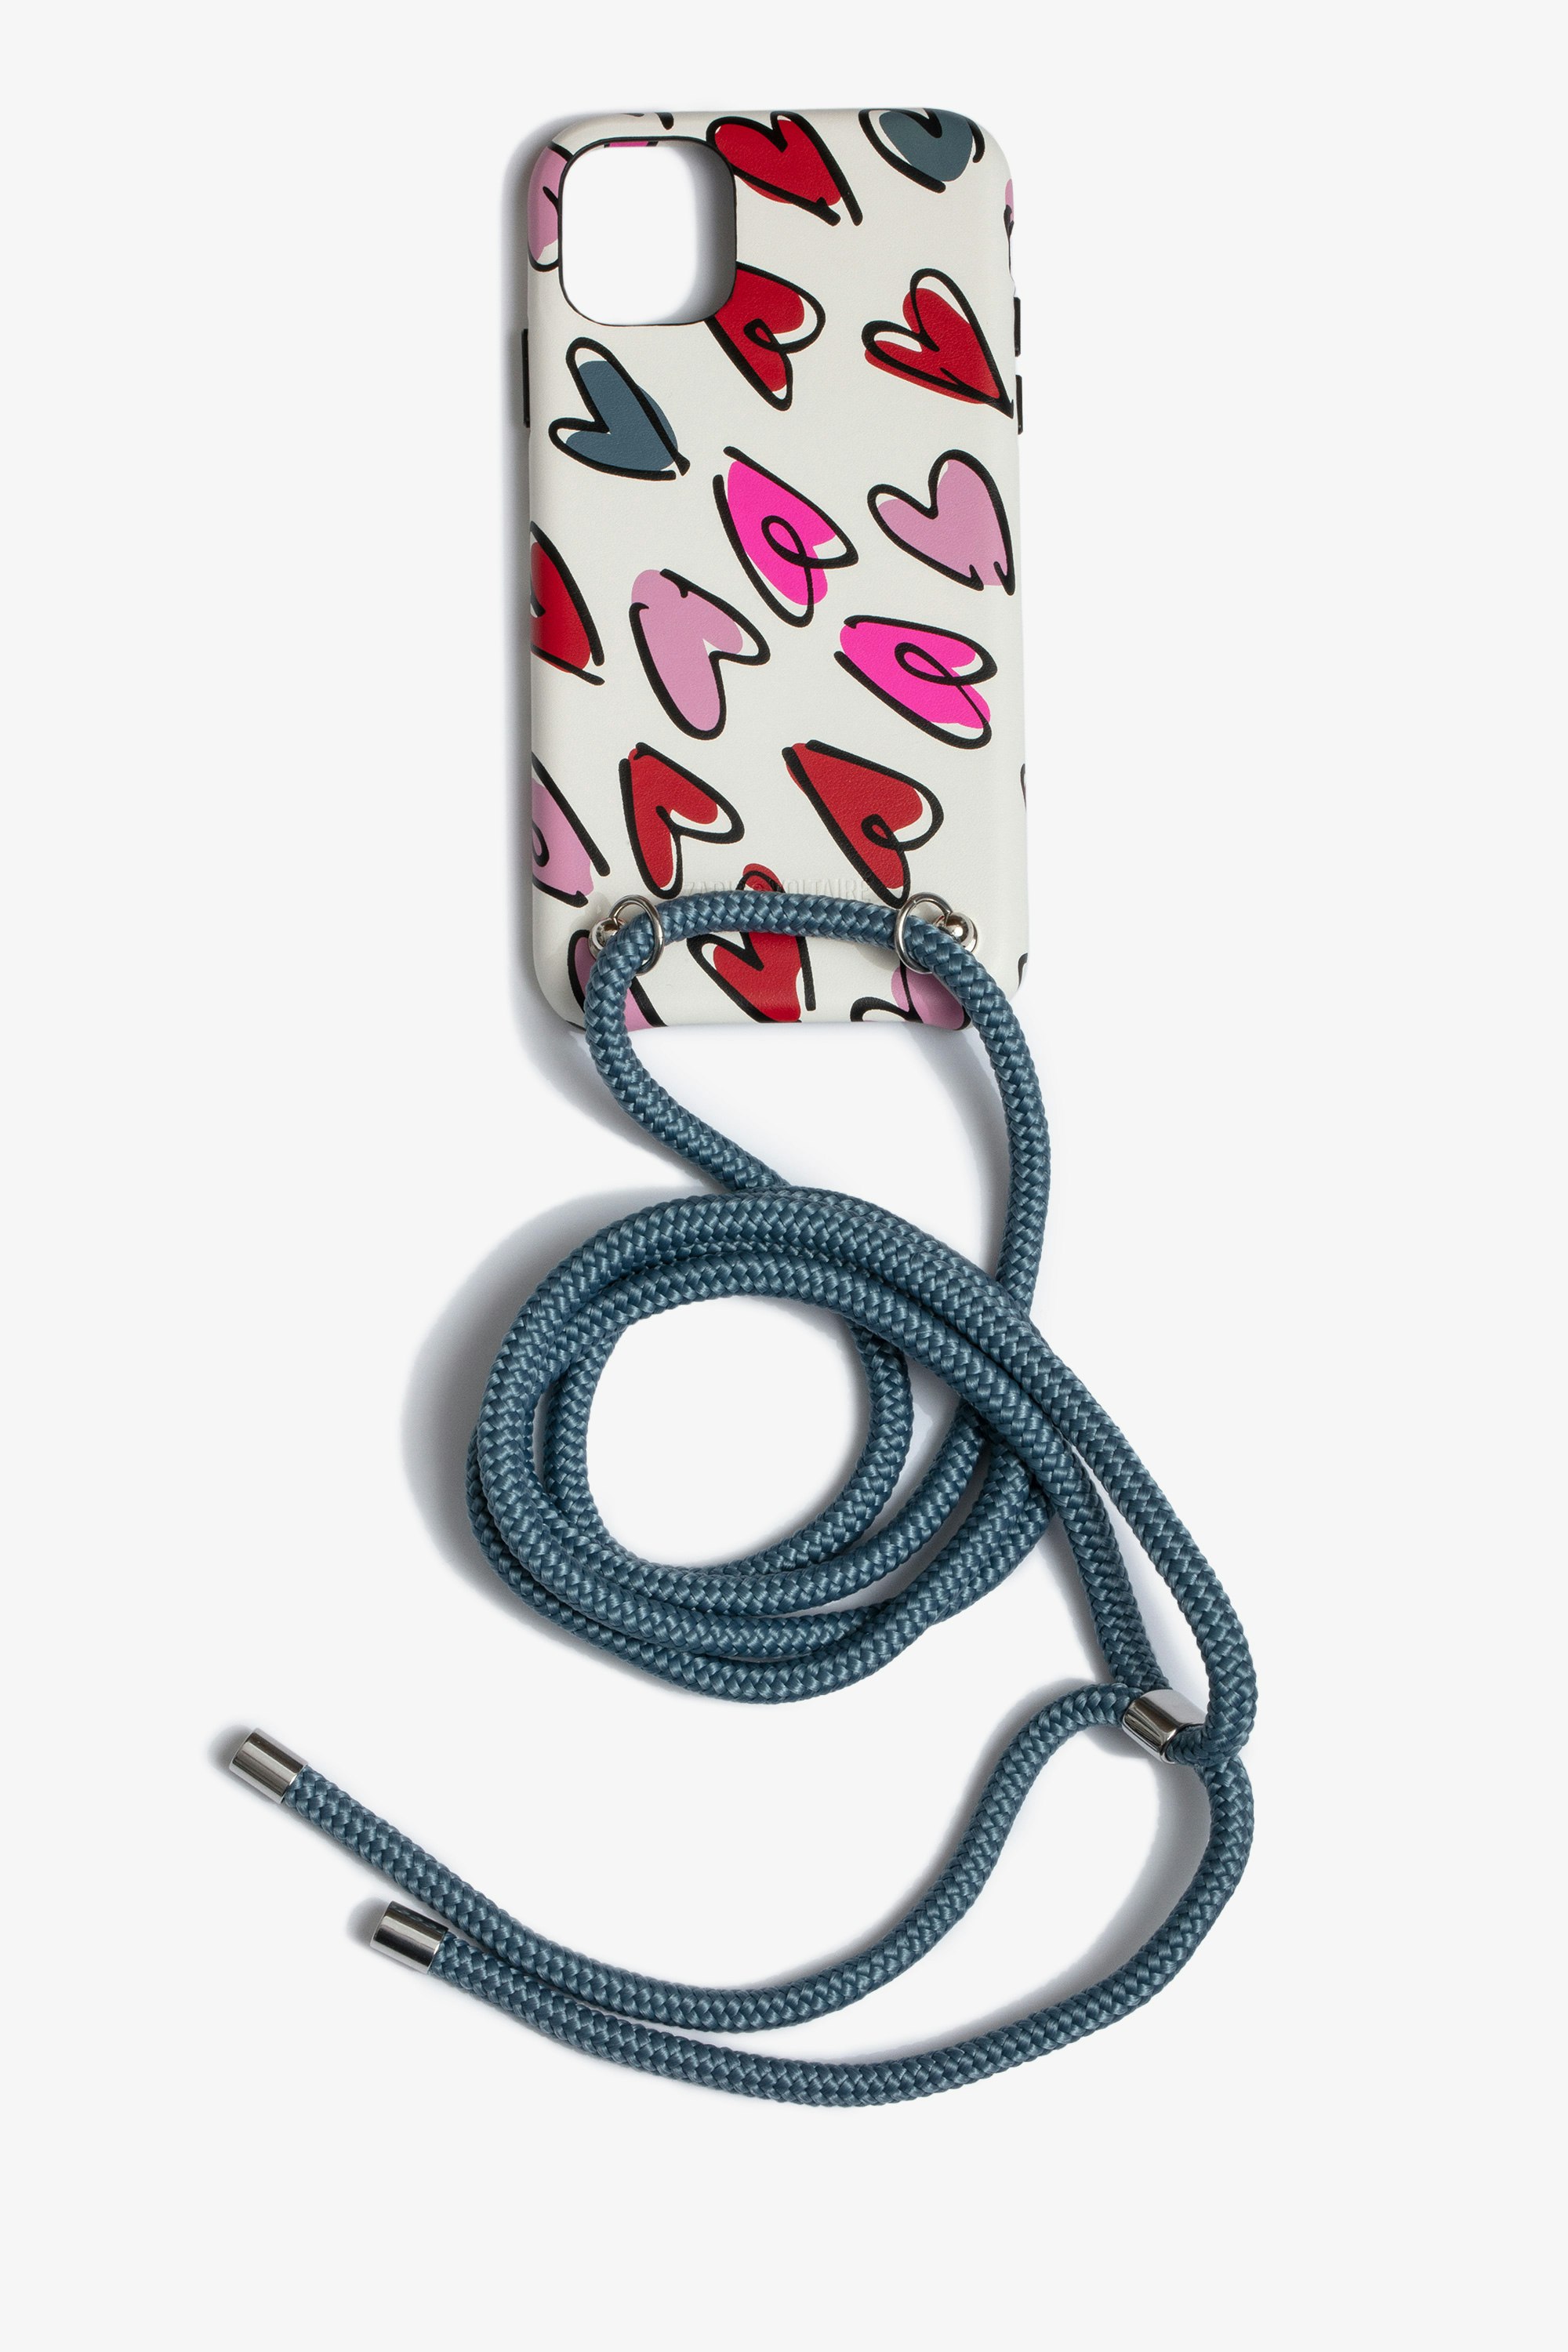 Coque IPhone 11 ZV Small Heart Rope Coque pour IPhone 11 munie d'un cordon à porter autour du cou femme